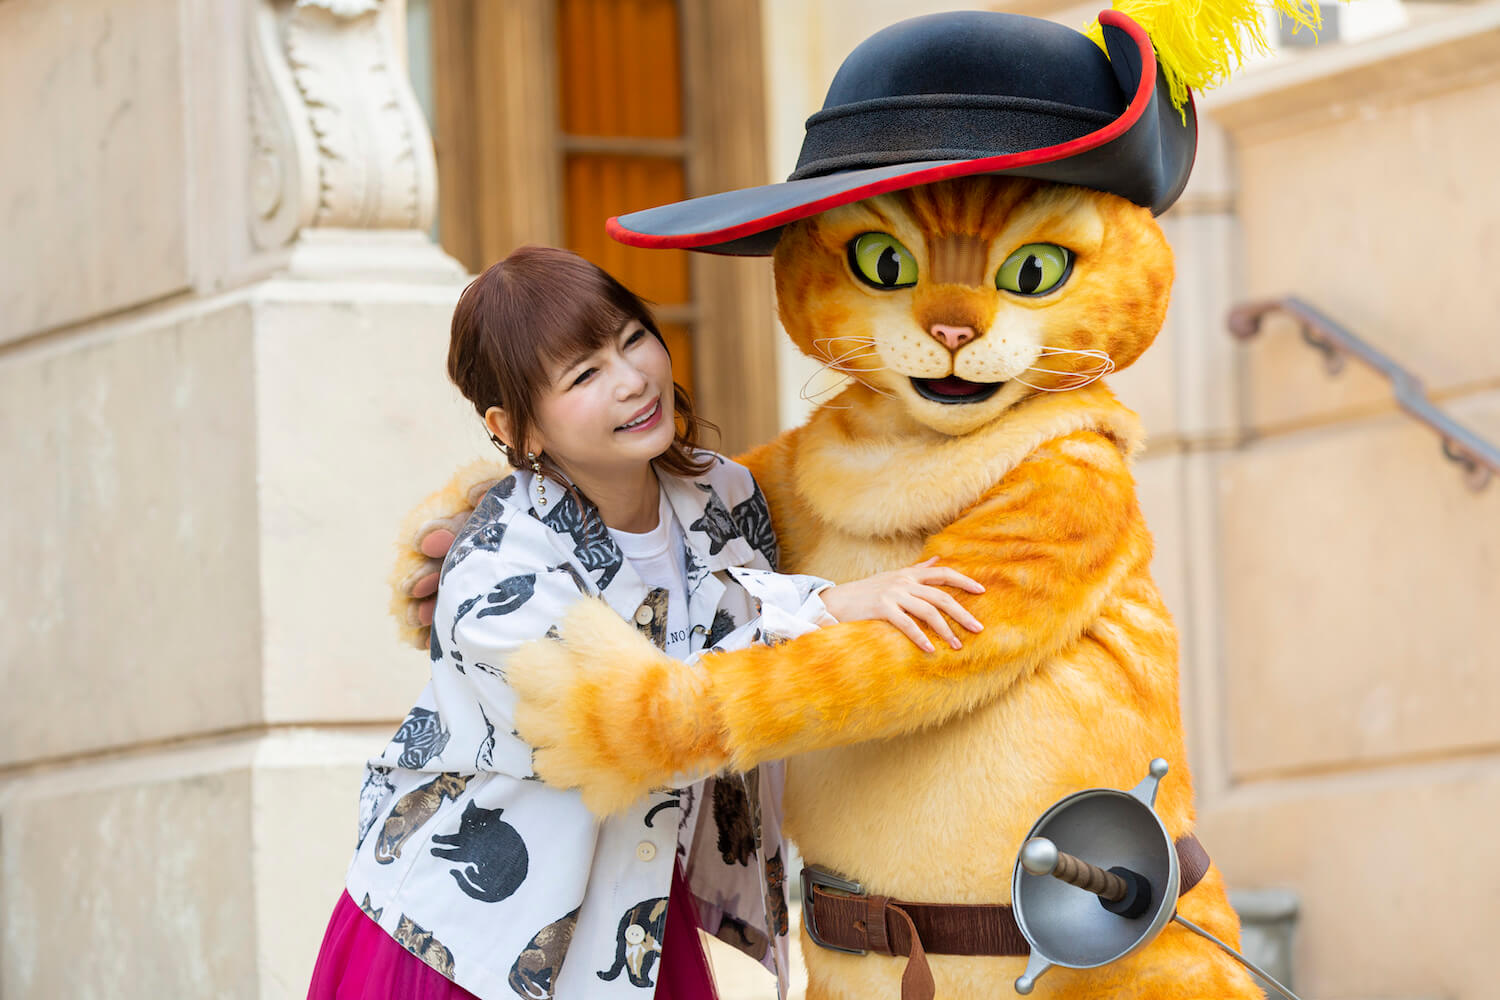 映画『長ぐつをはいたネコと9つの命』の主人公・猫の「プス」とグリーティングで触れ合う中川翔子（しょこたん）